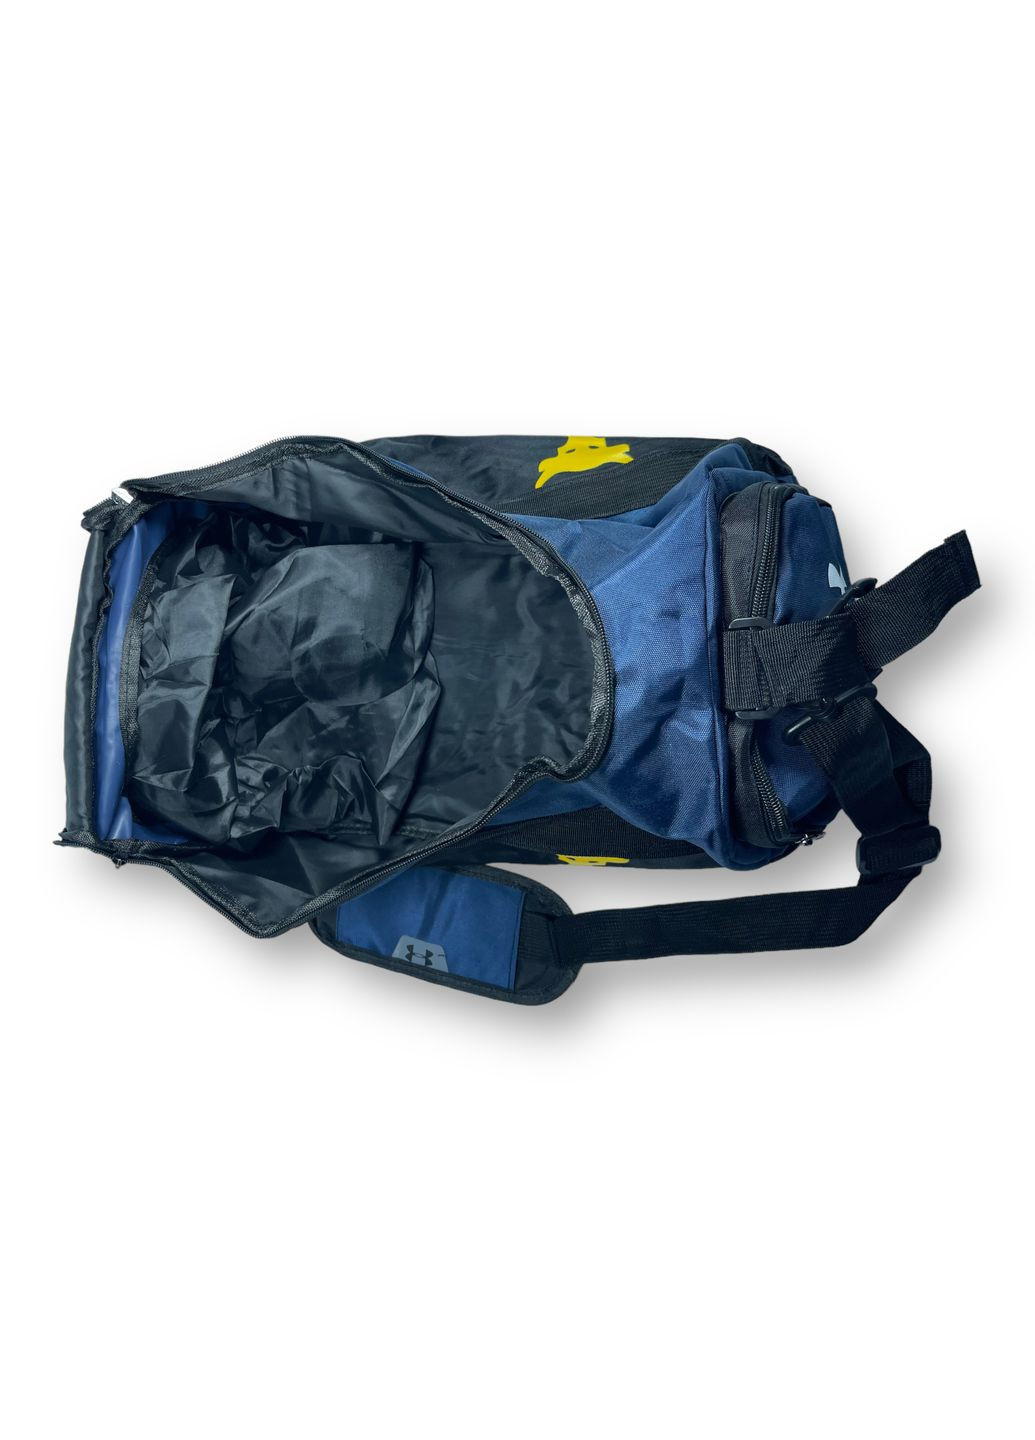 Дорожня сумка рюкзак, 26 л,, 1 відділення, 5 додаткових відділень, наплічний ремінь, 2 лямки, розмір: 43*28*22 см, синя Under Armour (268995077)